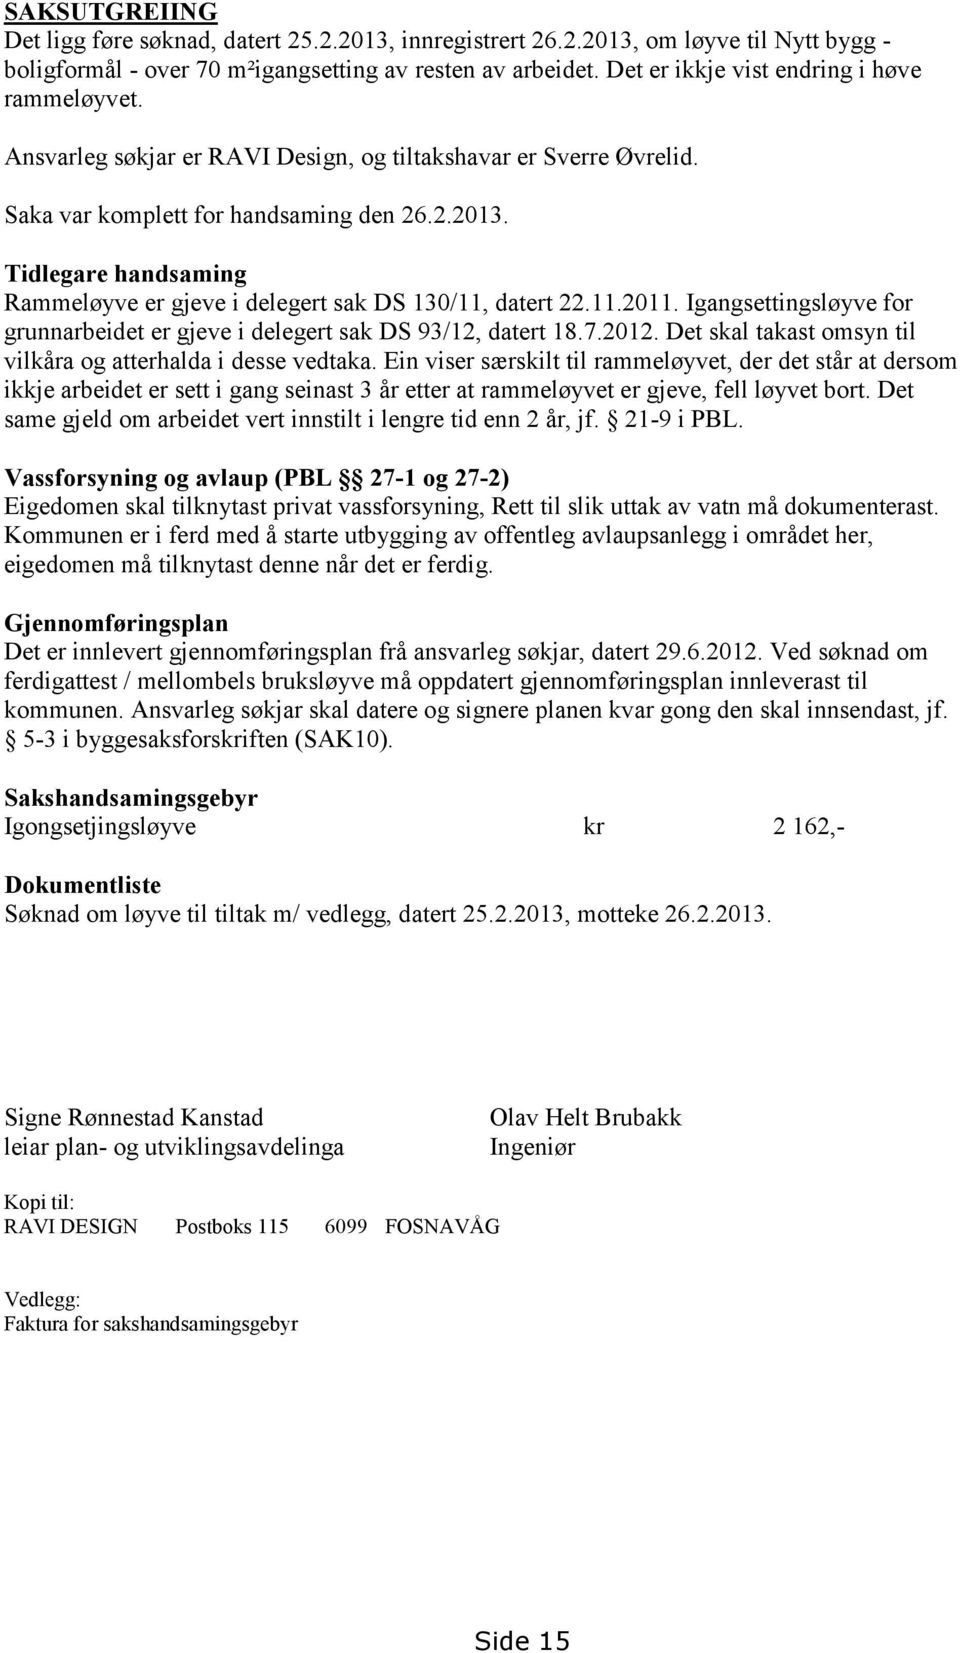 Tidlegare handsaming Rammeløyve er gjeve i delegert sak DS 130/11, datert 22.11.2011. Igangsettingsløyve for grunnarbeidet er gjeve i delegert sak DS 93/12, datert 18.7.2012.